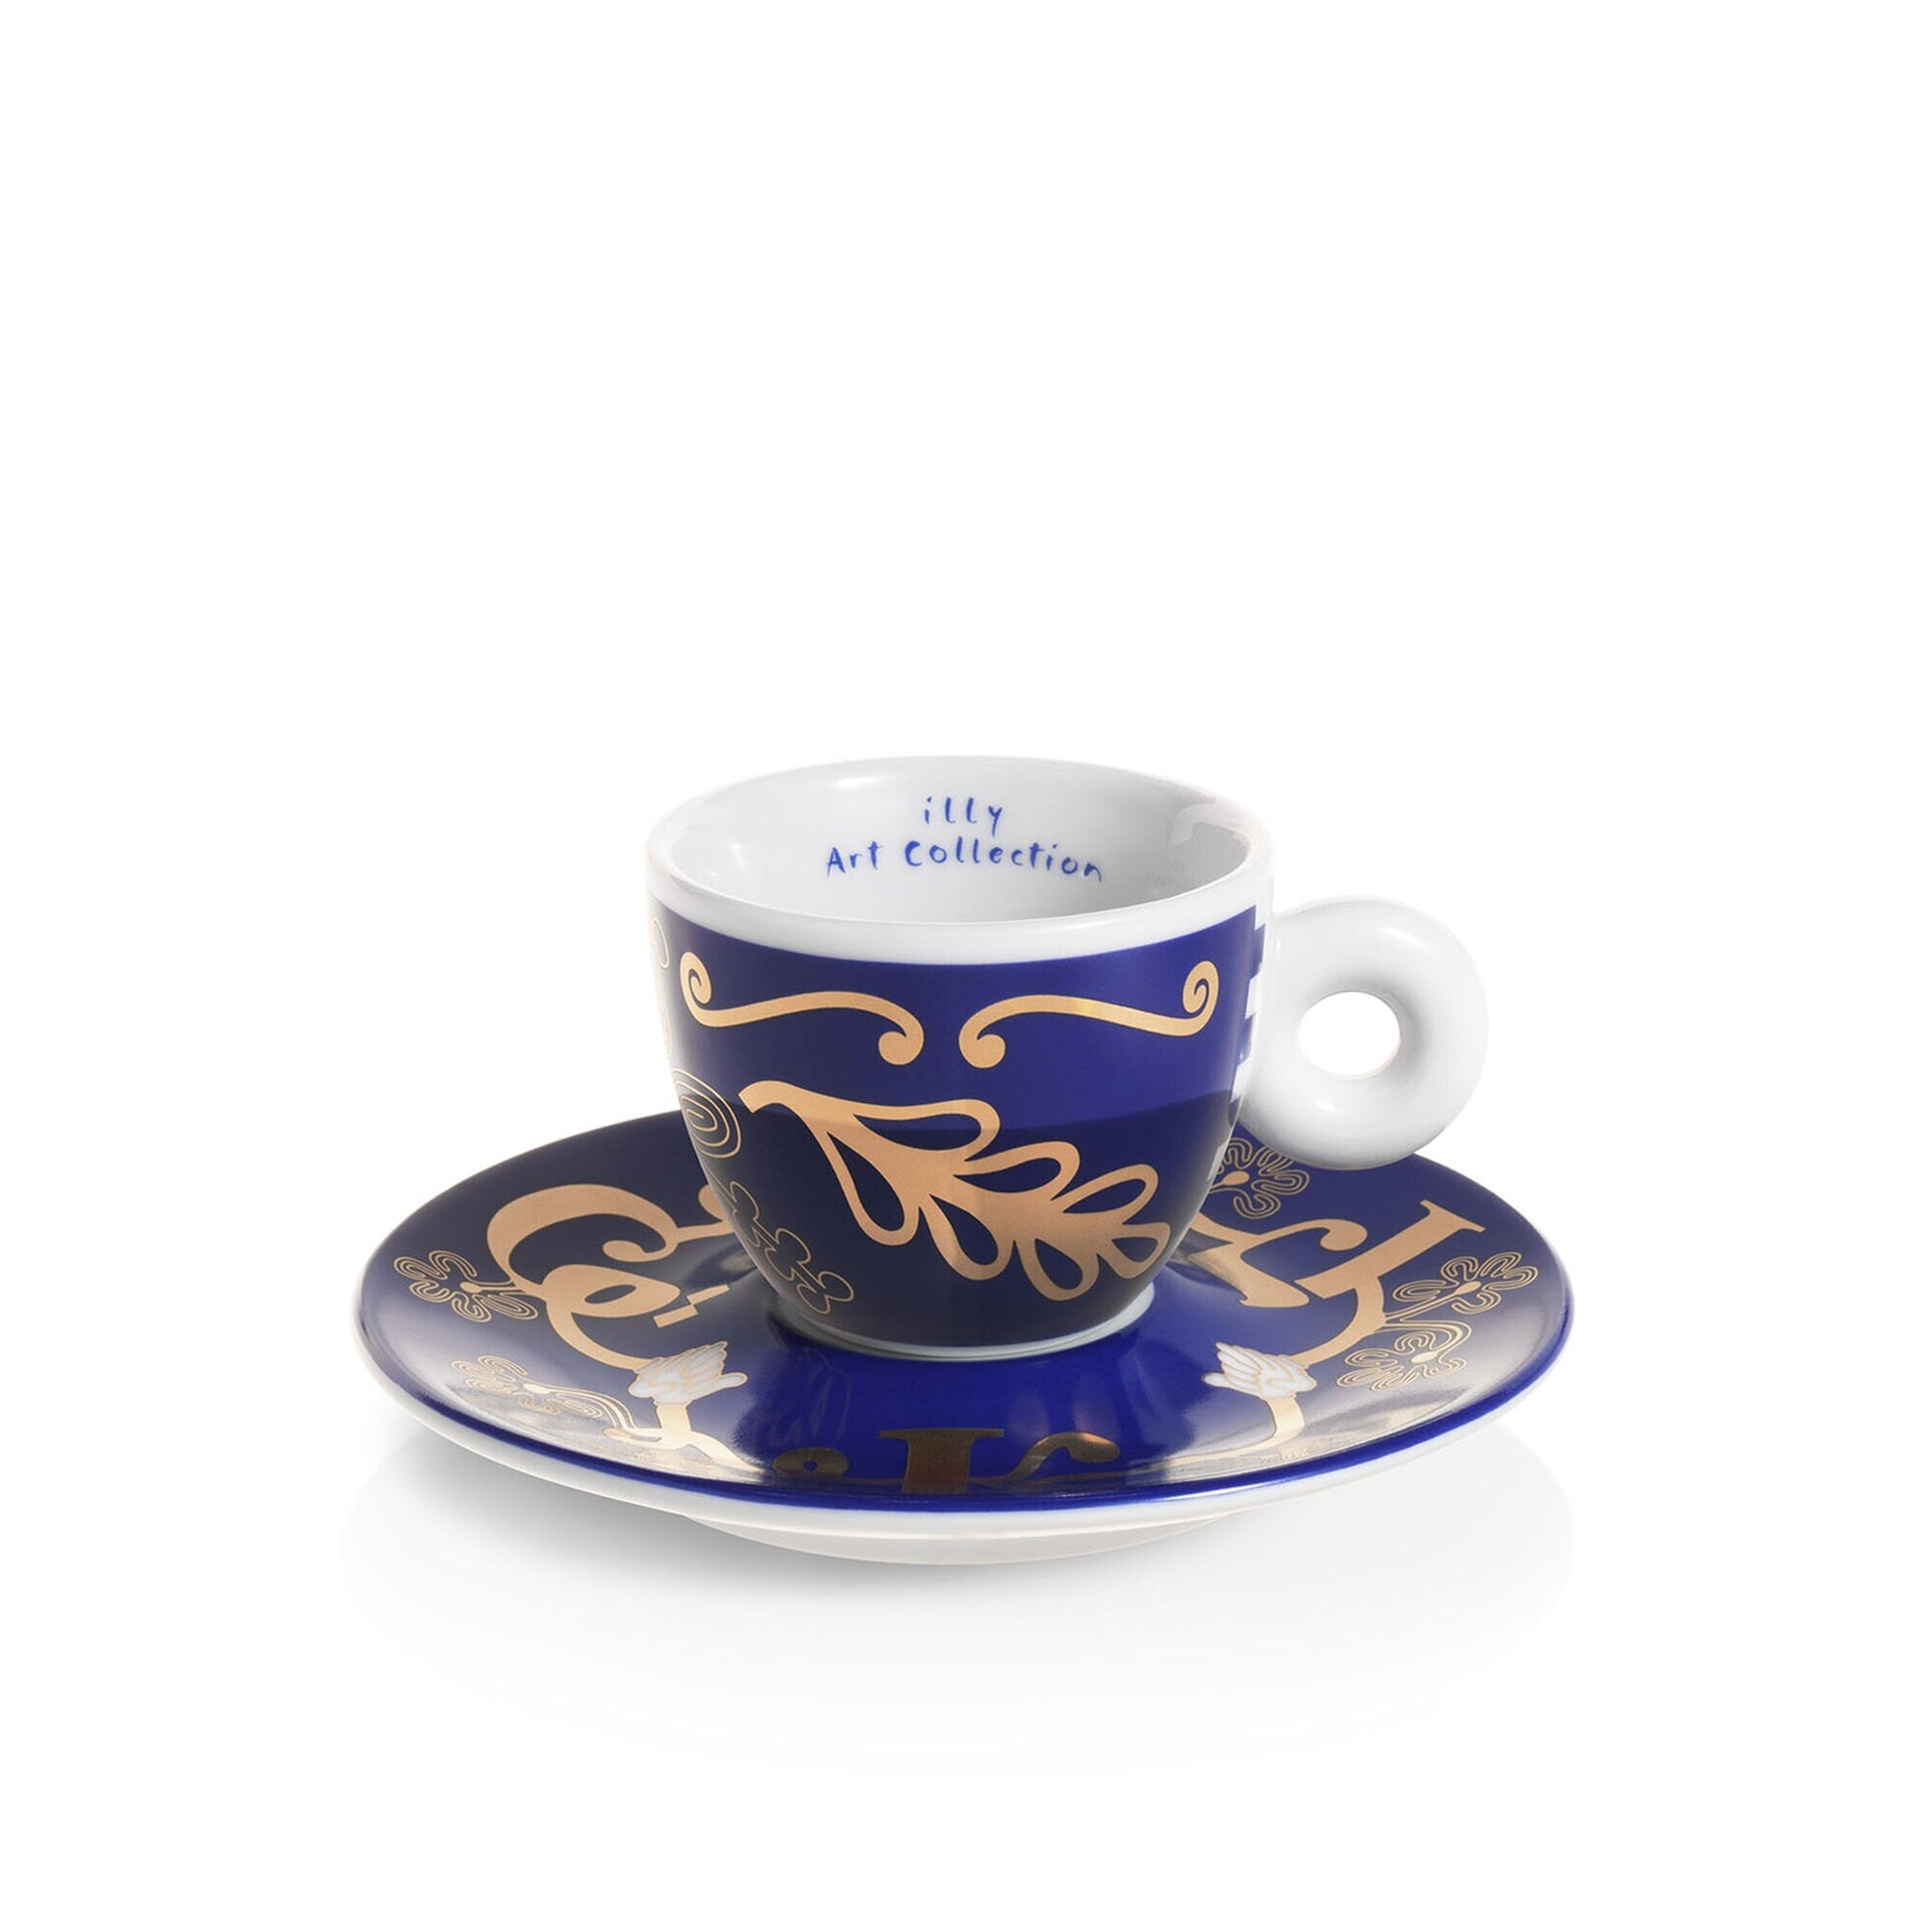 2 oz Espresso Cup Ceramika Artystyczna UNIKAT H0722D